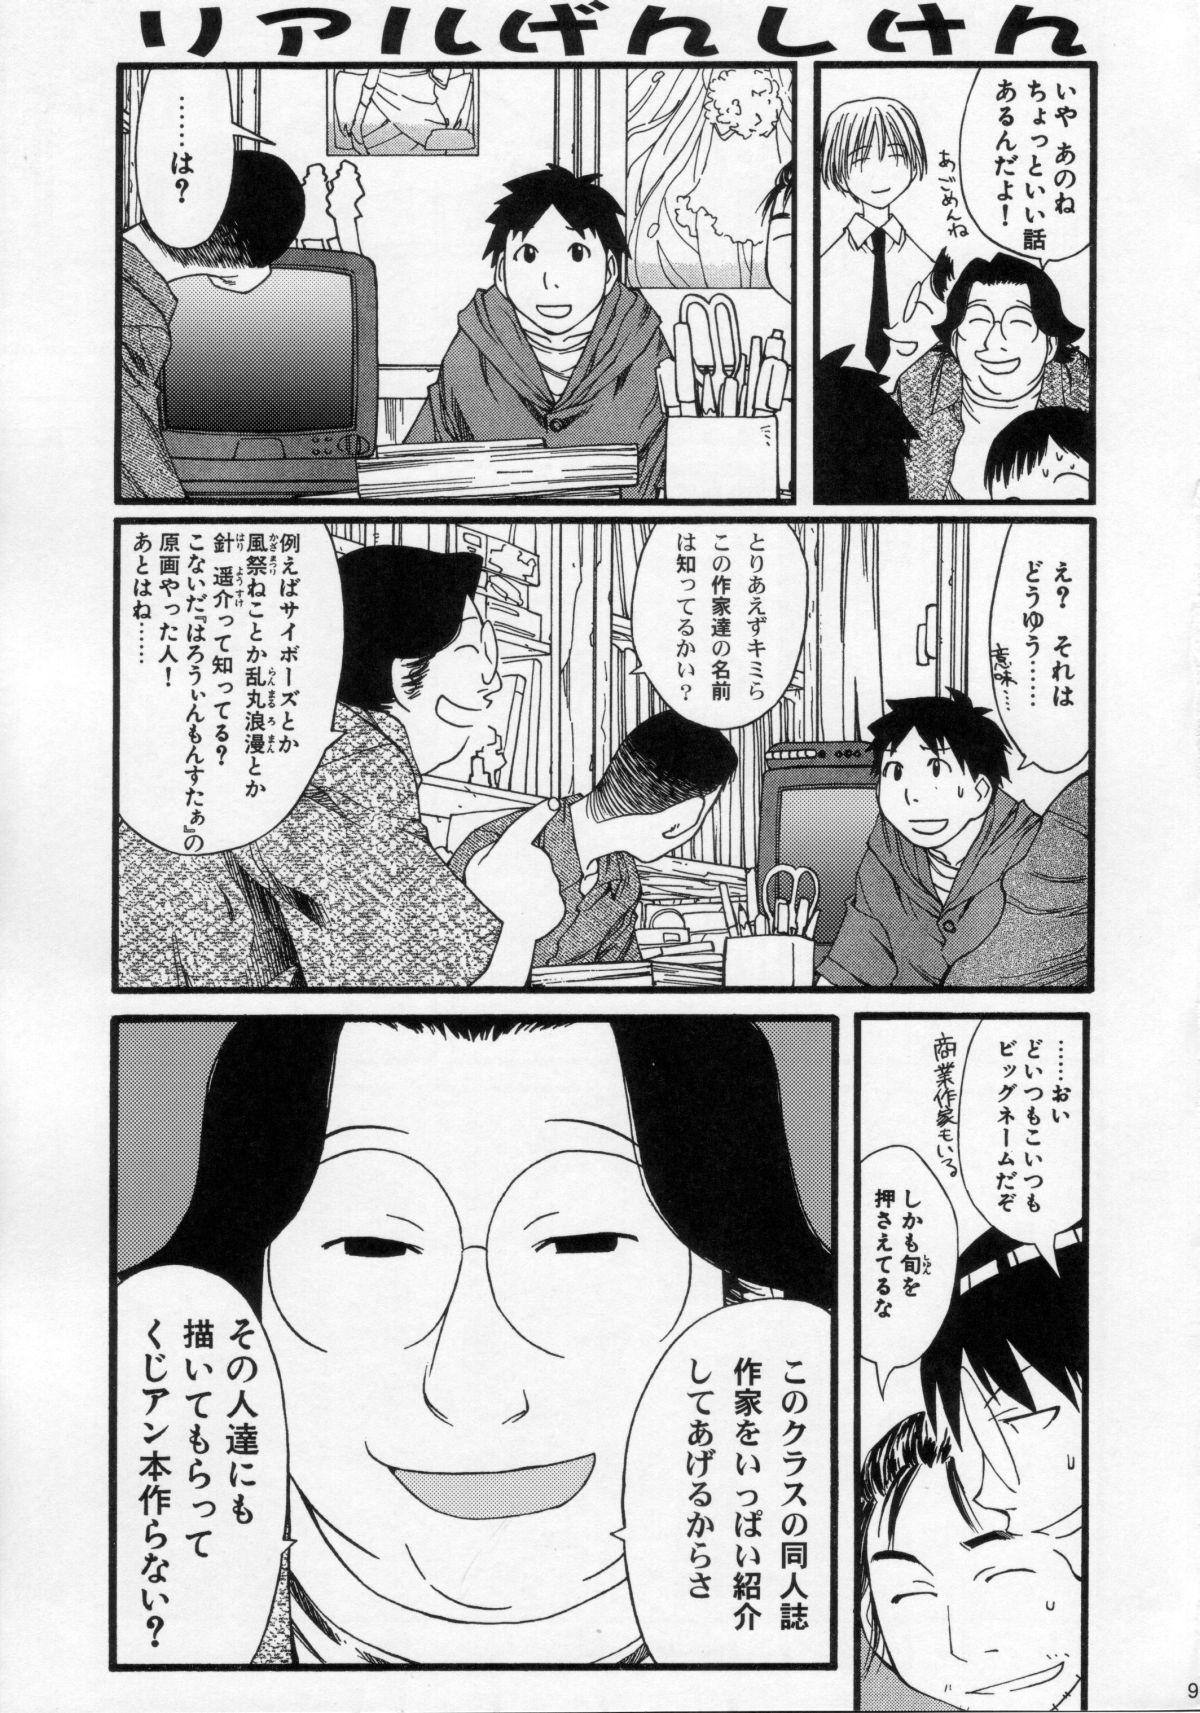 Umeta Manga Shuu 11 -nin iru! 96